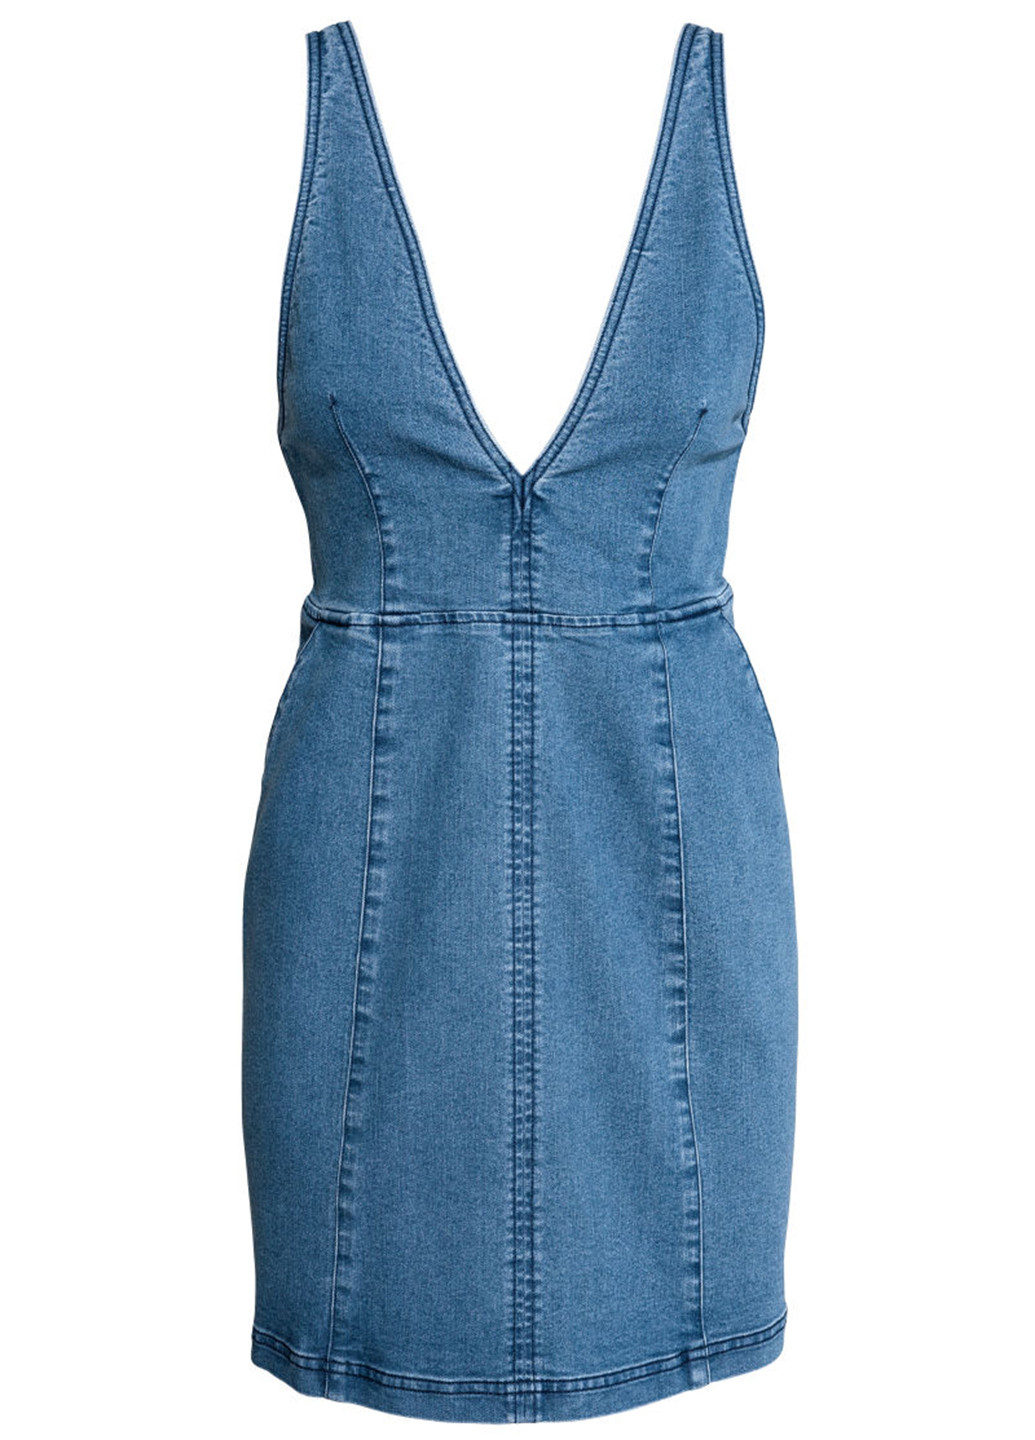 Синее джинсовое платье H&M однотонное